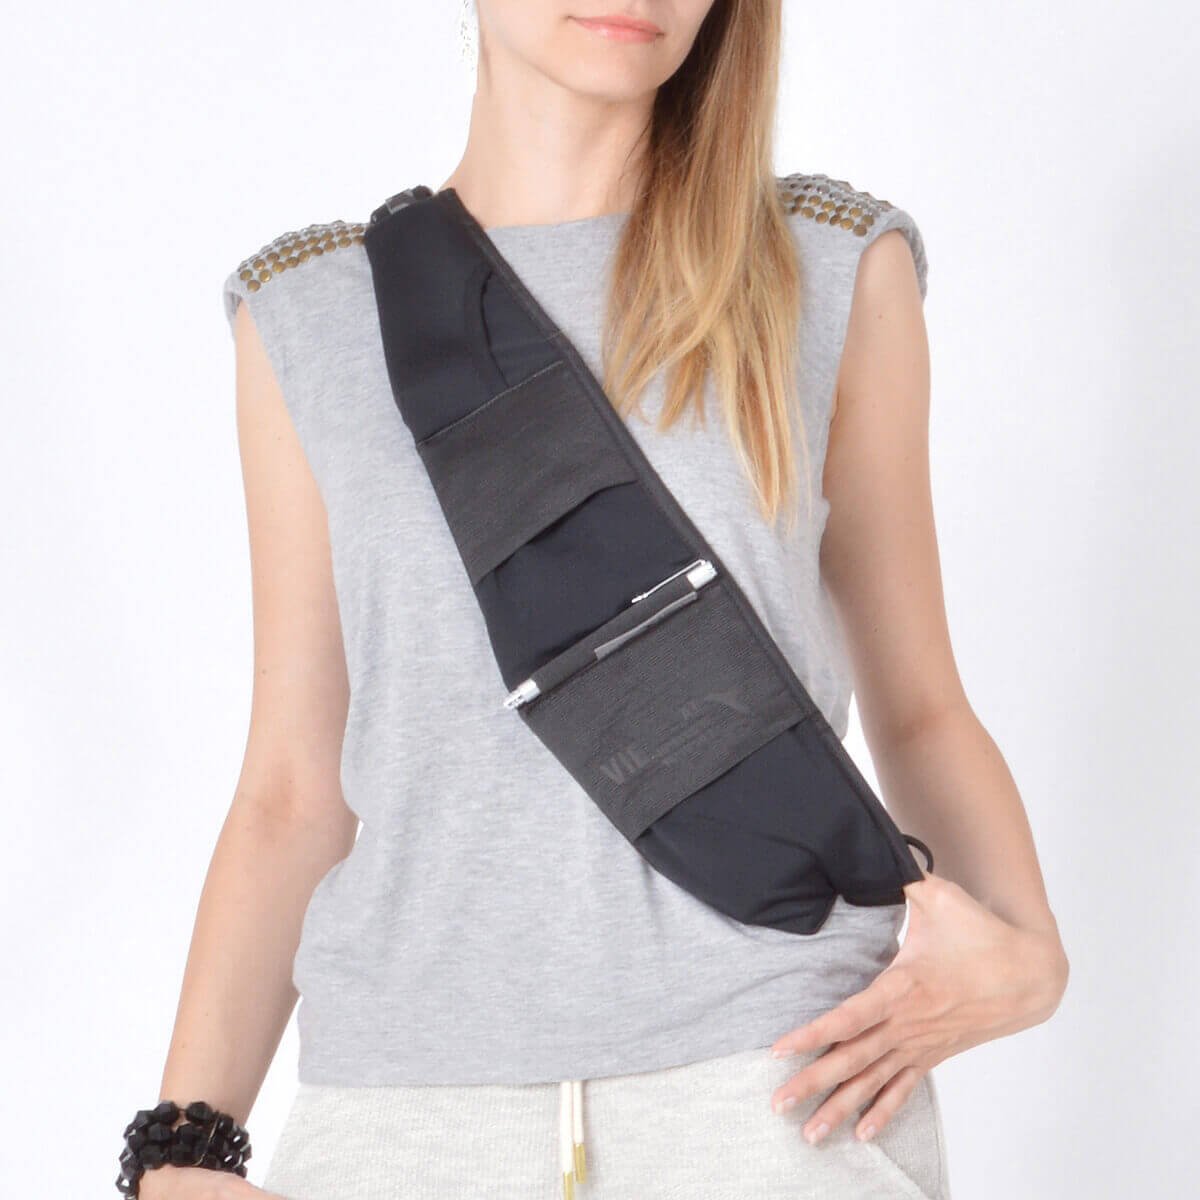 Luxury Shoulder Bag Carry as Waist Bag Belt Bag for Men Women